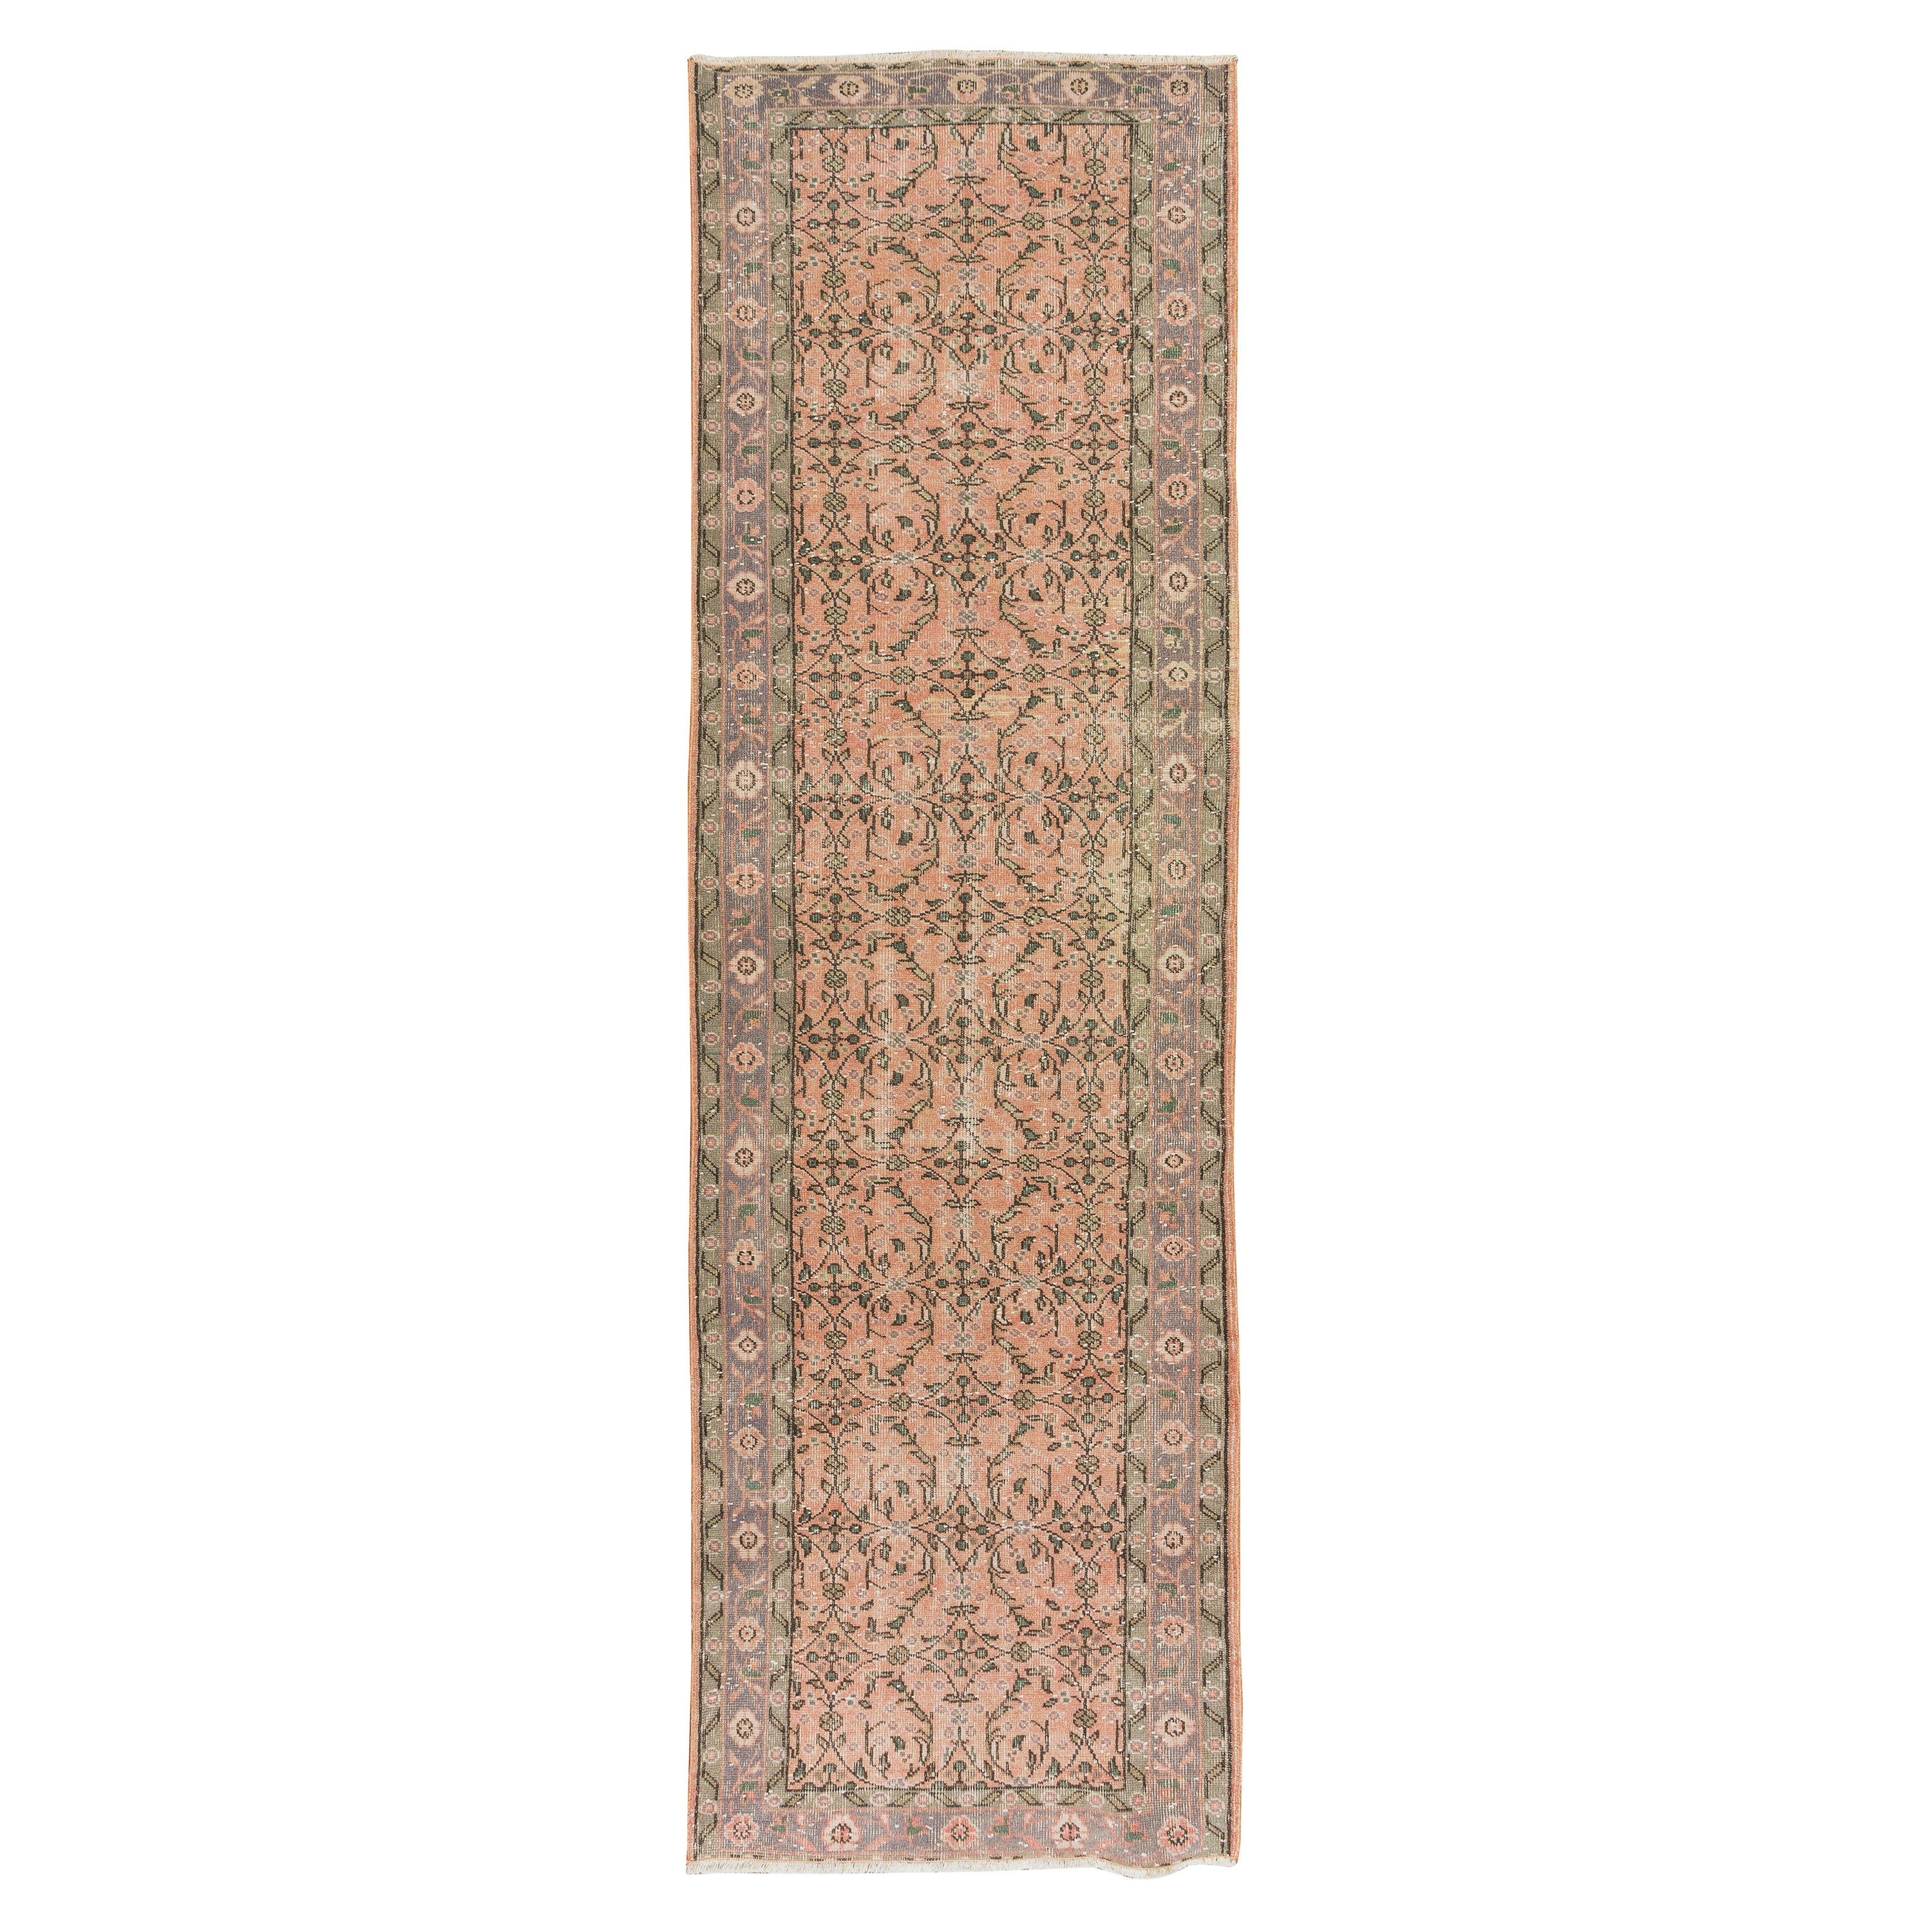 3.3x10.8 ft Vintage Handmade Turkish Runner Rug with Floral Design for Hallway For Sale